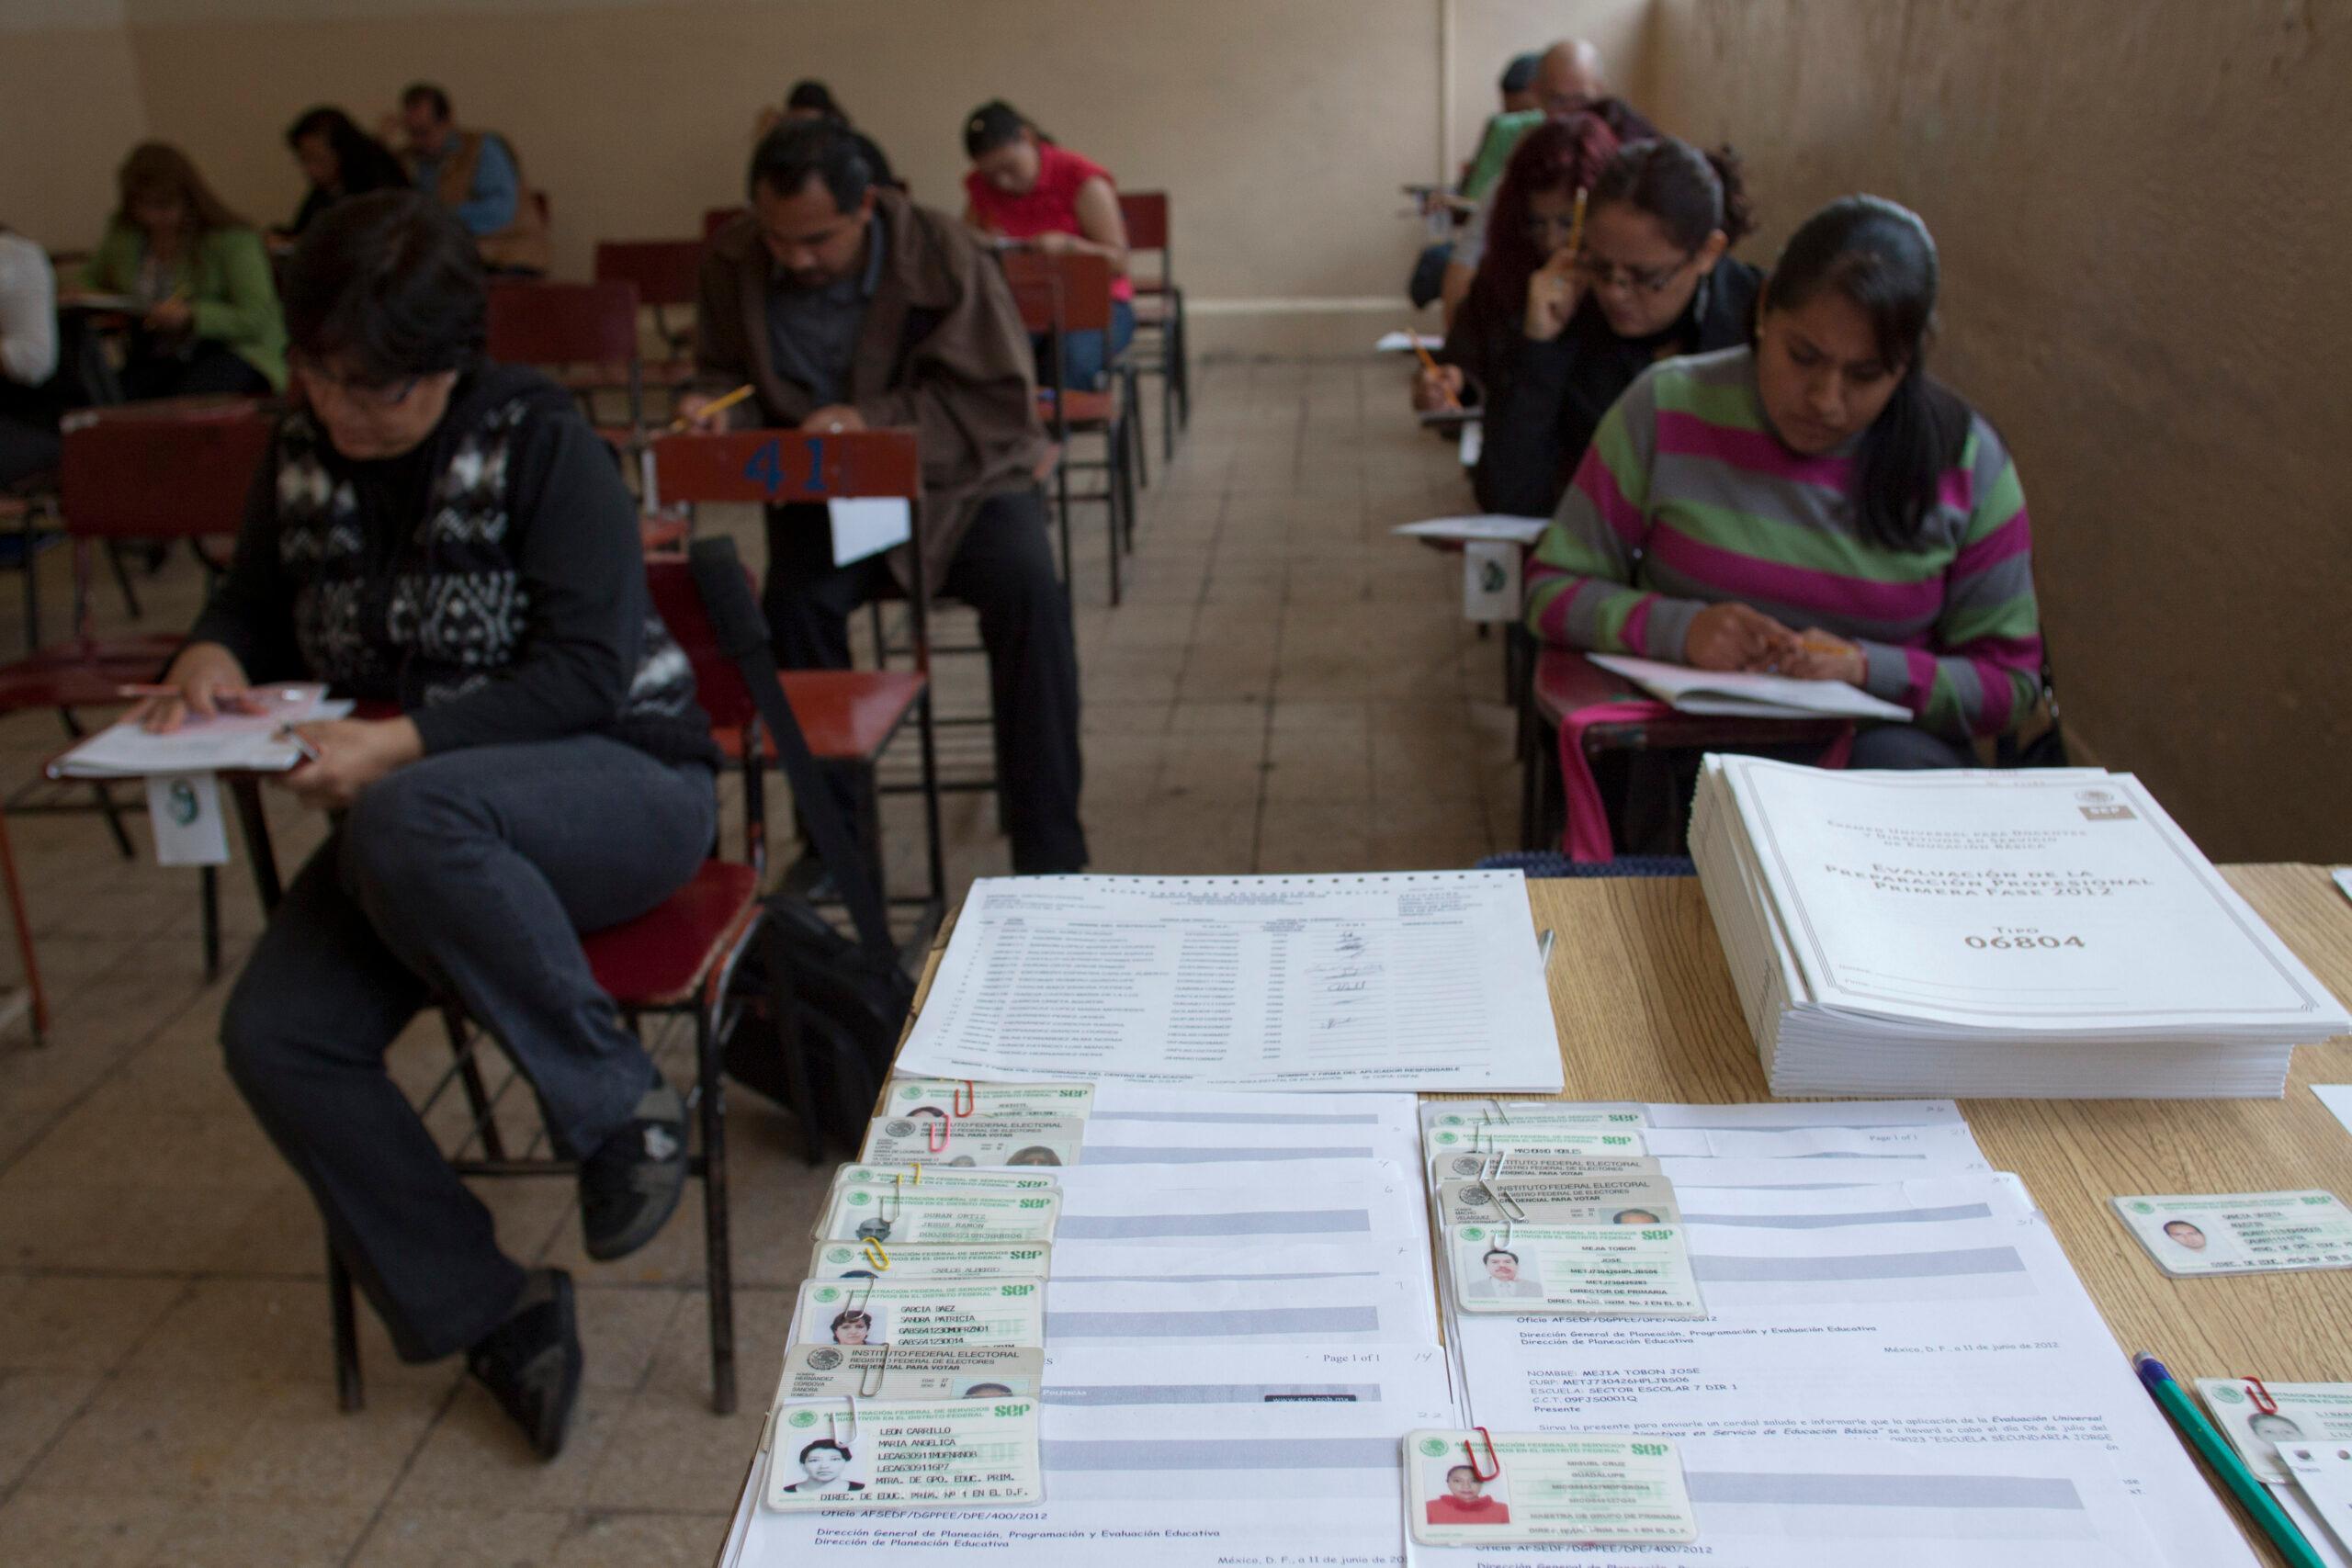 Por motivos de “seguridad”, la SEP suspende exámenes docentes (otra vez) en Oaxaca y Michoacán